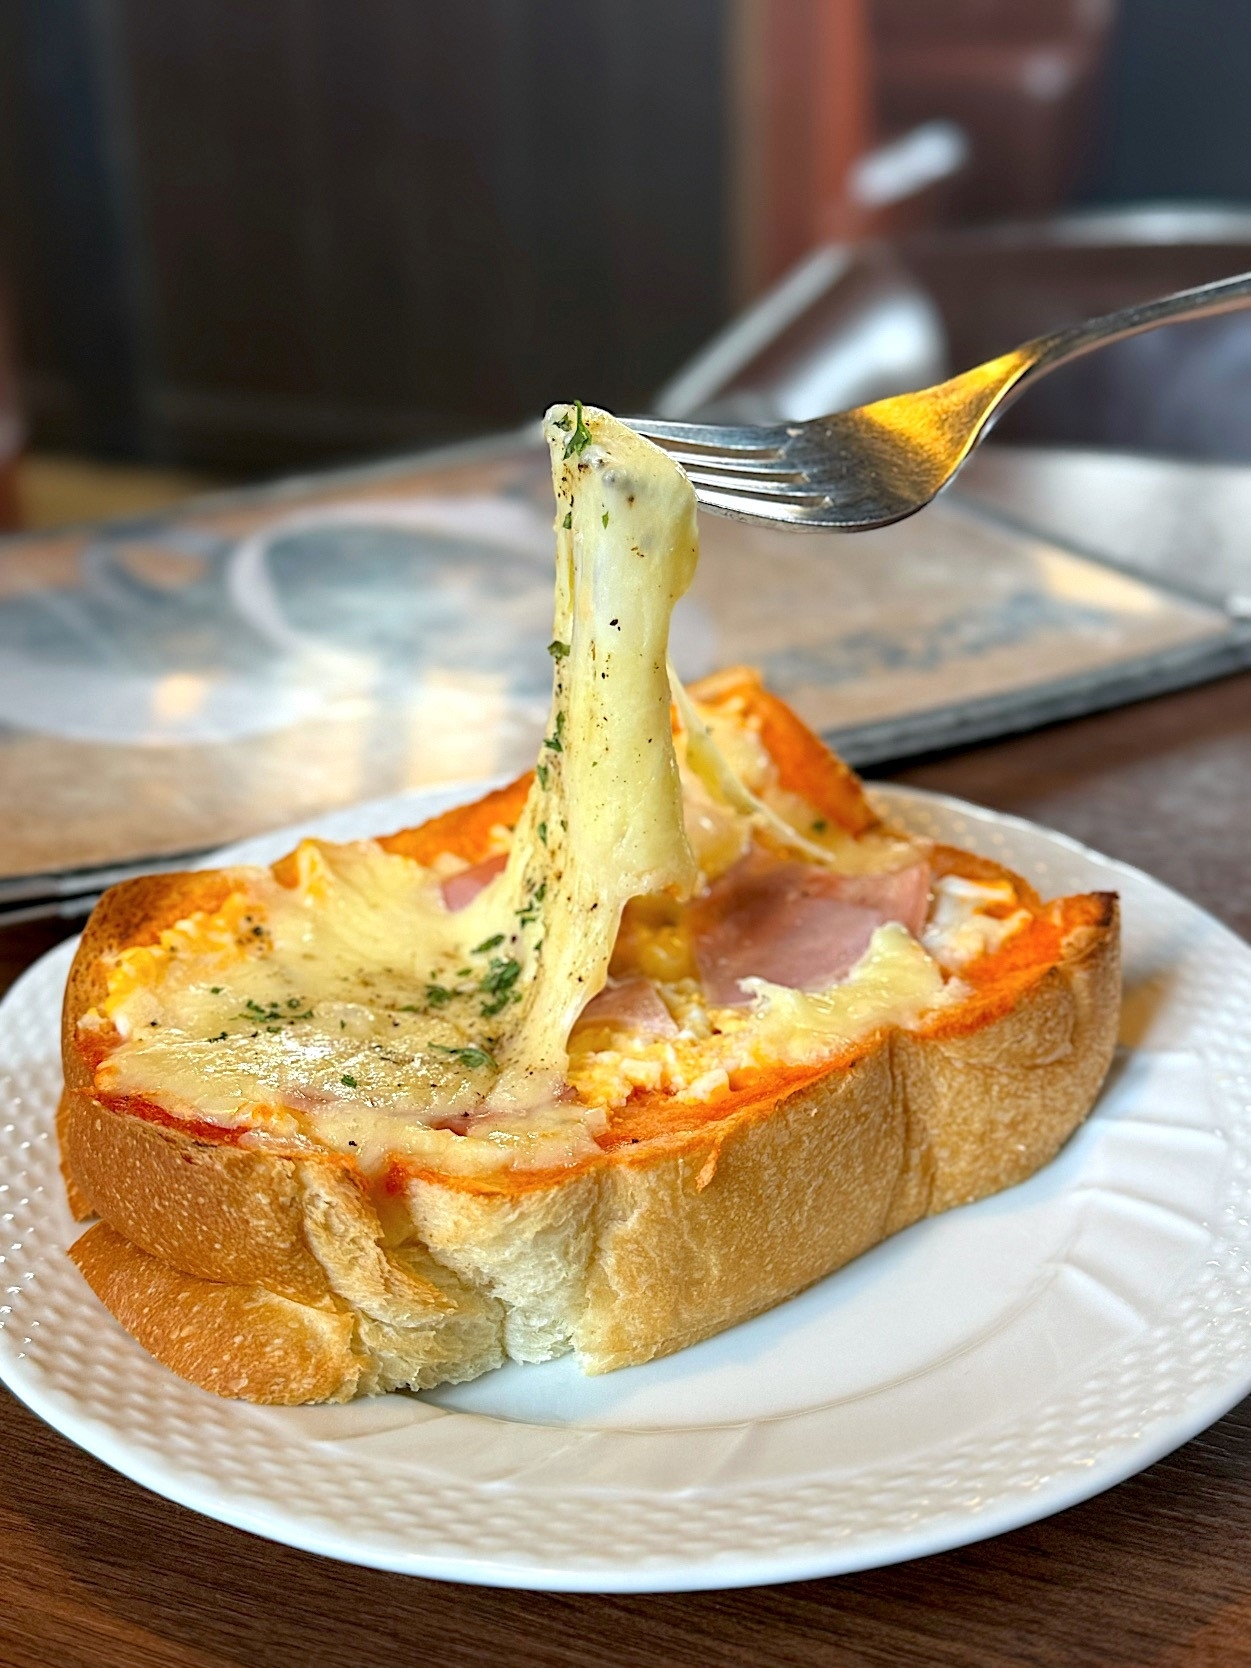 星乃珈琲のおすすめ食事メニュー「ハムチーズトースト」